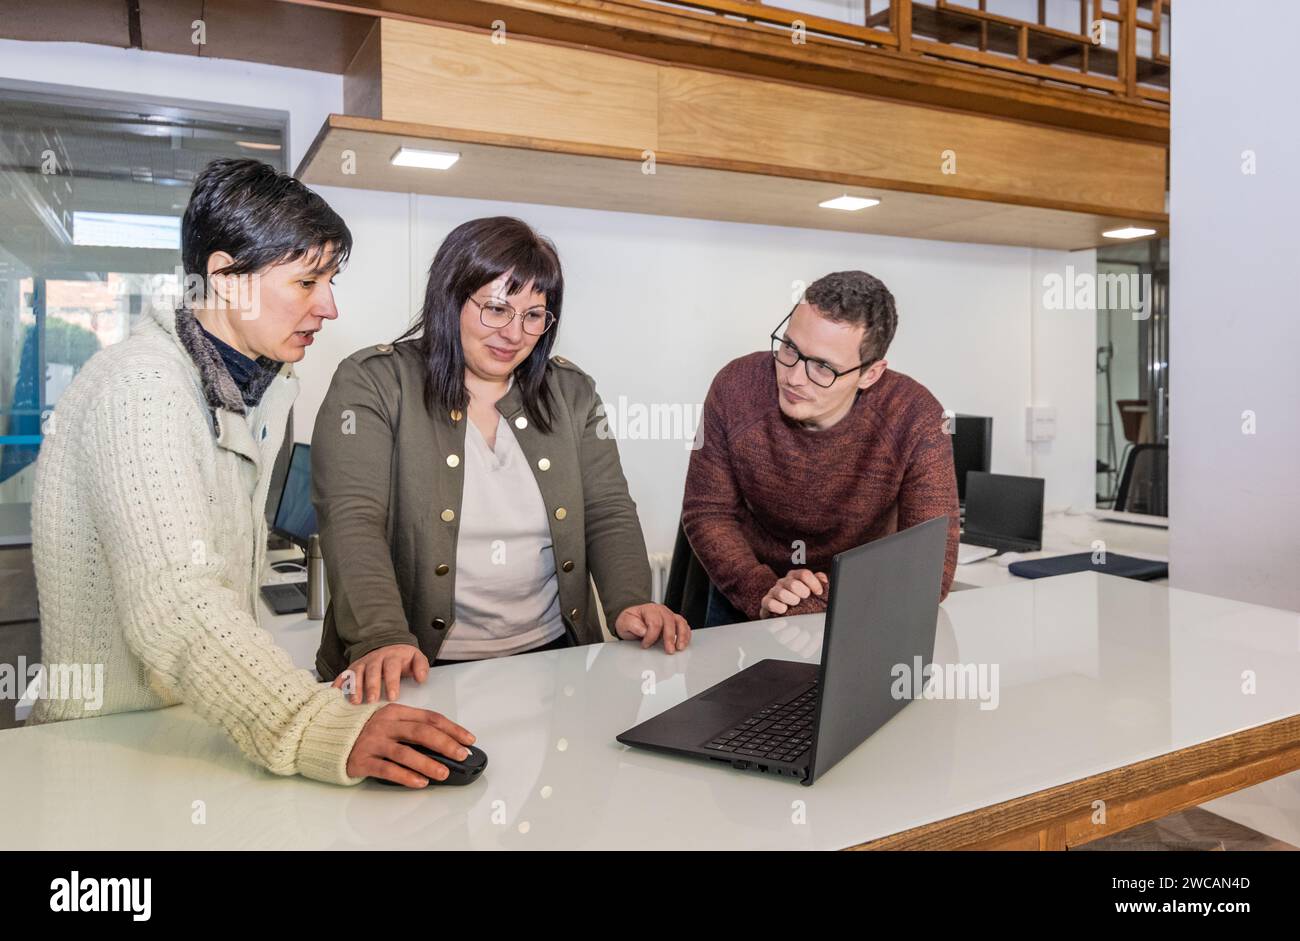 Drei Kollegen in einem Büro, ein Mann und zwei Frauen beraten etwas auf einem Laptop, der von einer der Frauen mit der Maus gesteuert wird Stockfoto